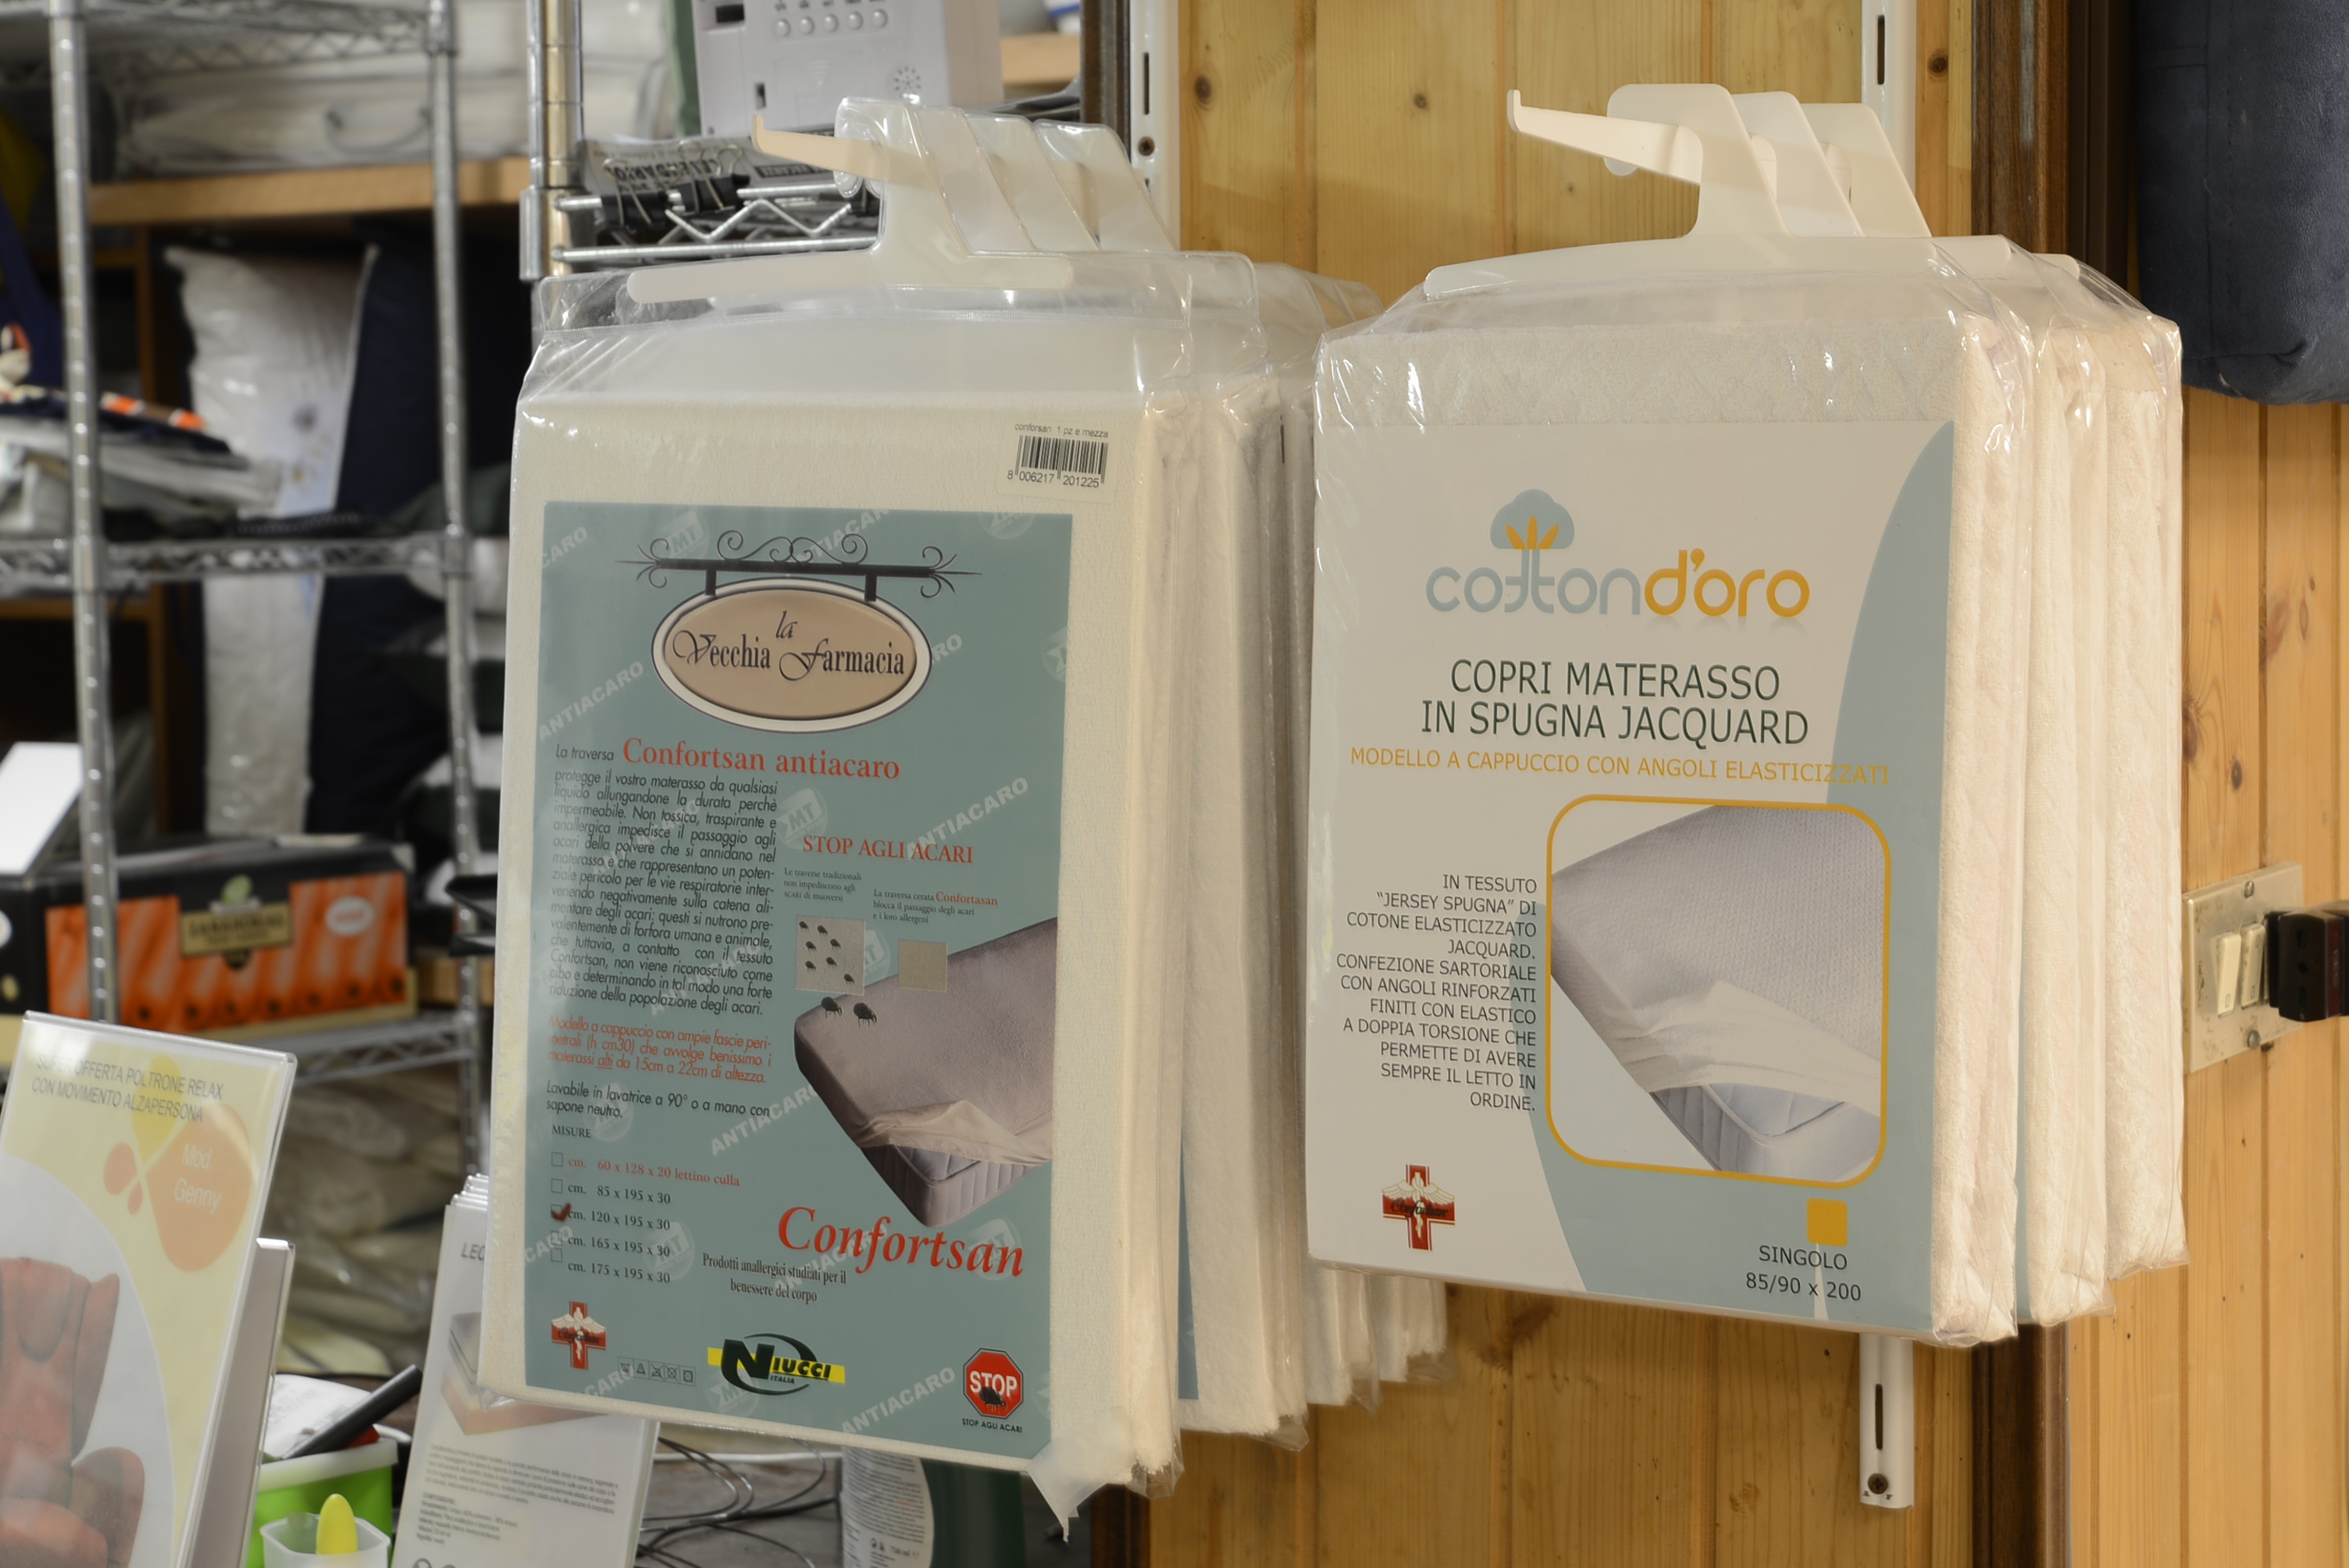 Copri materassi in vendita a Verona